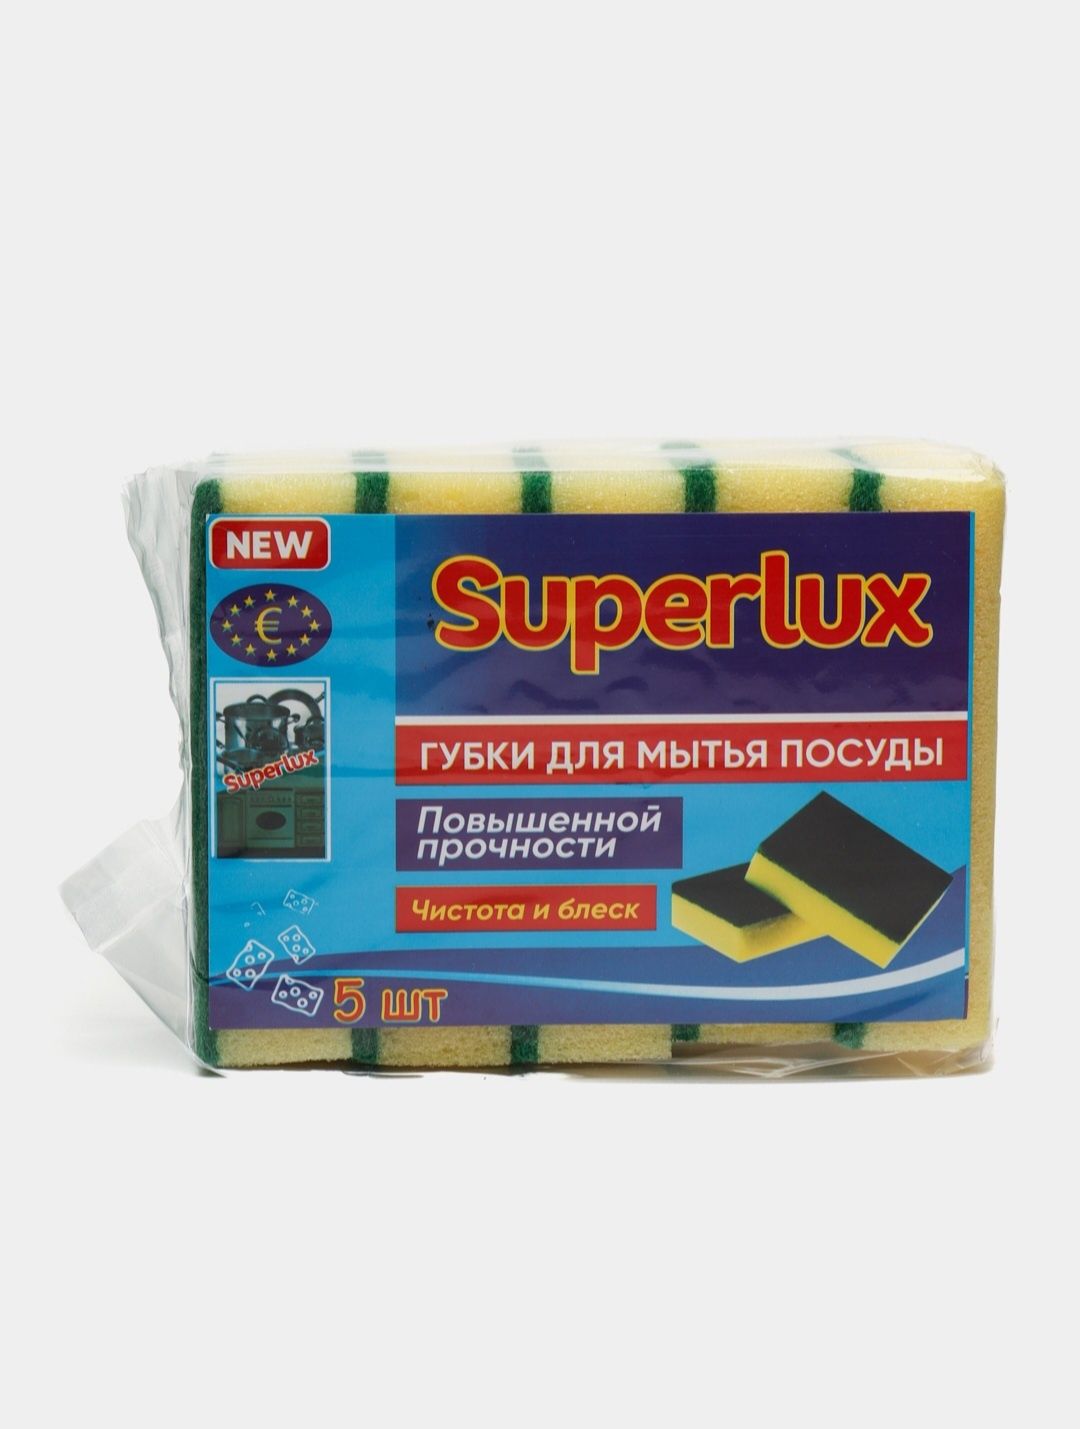 Губки Super Lux, 5000 за упаковку (в упаковке 10 шт)